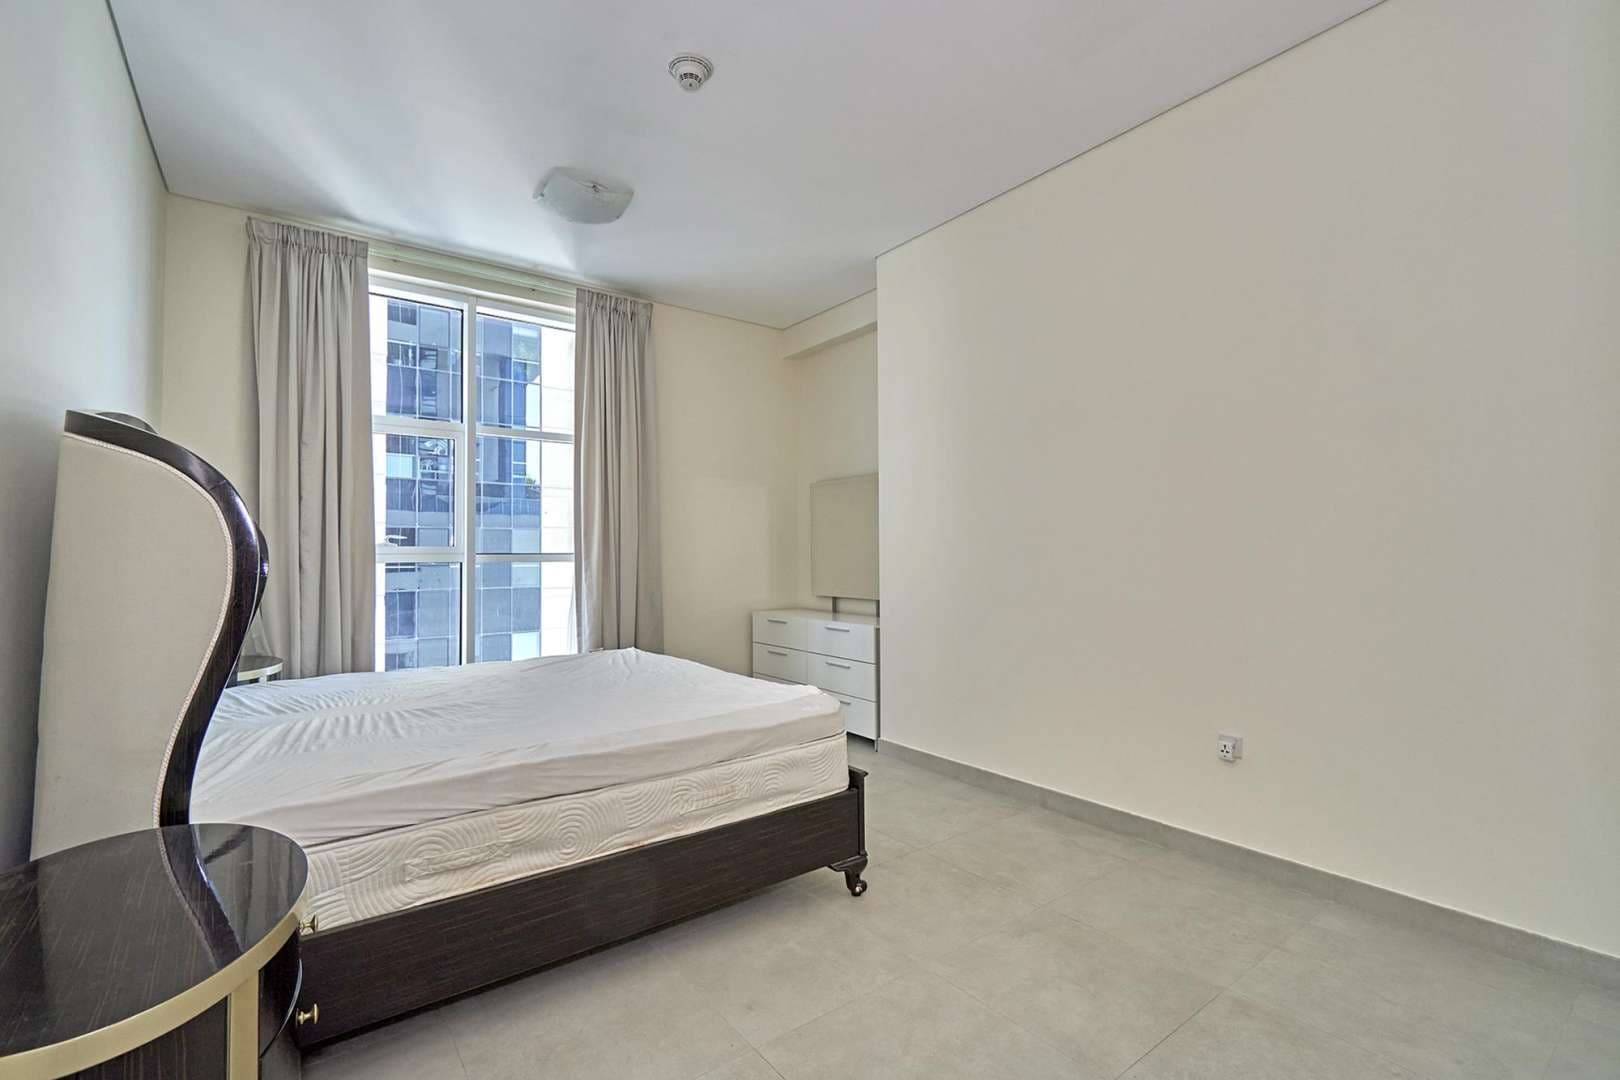 2 Bedroom Apartment For Rent Marina Arcade Lp08178 115fd554a92f8900.jpg